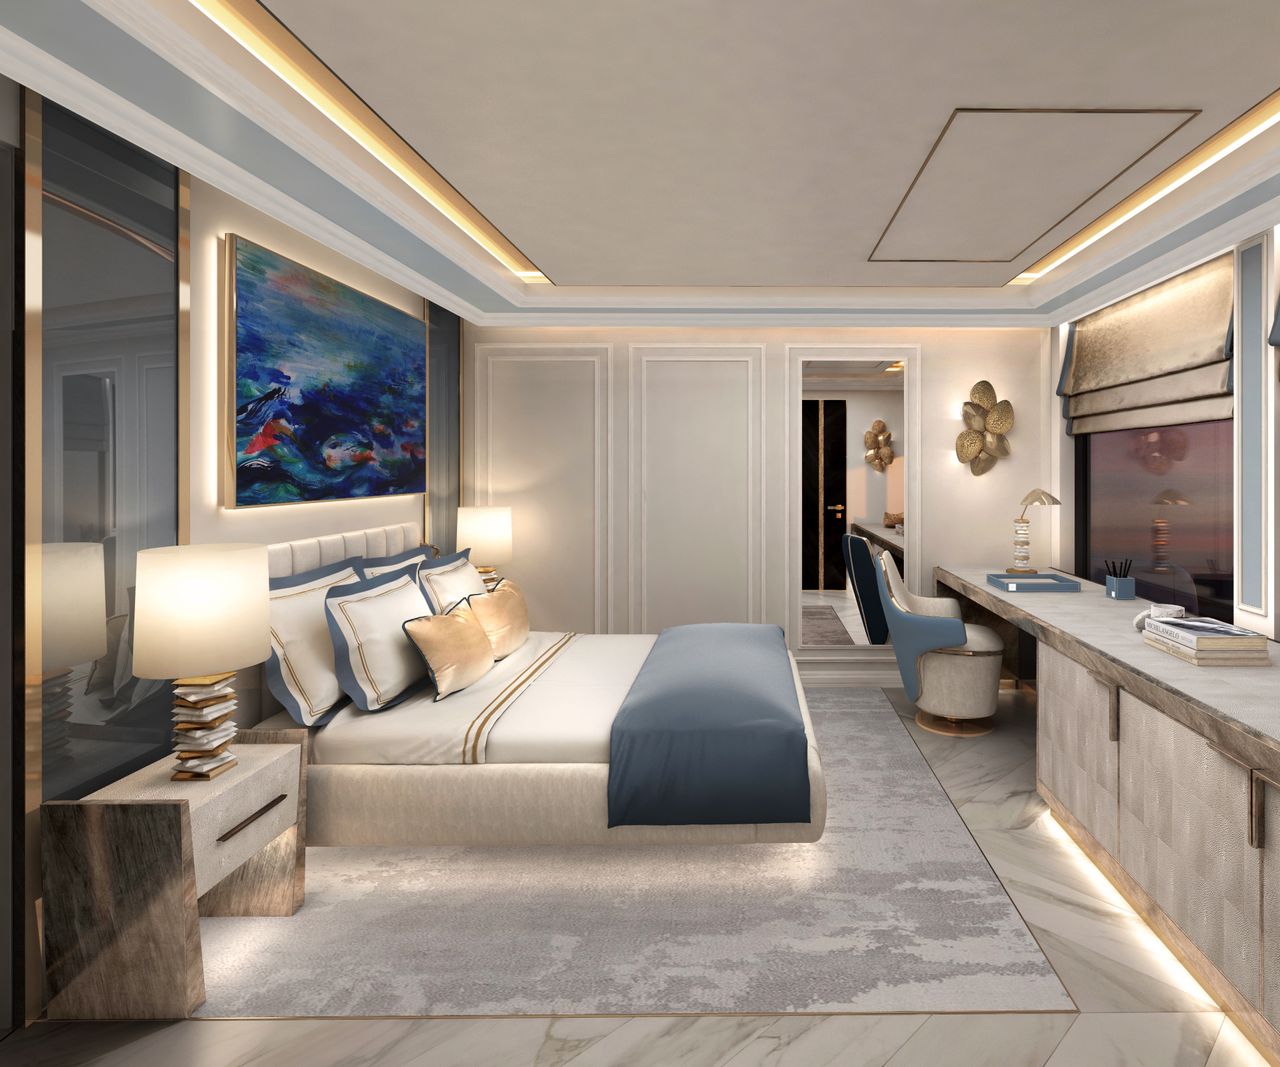 Wnętrze luksusowego jachtu L'Elegance. Projekt stworzony przez Alicję Kotlarek wygrał w 2022 roku w międzynarodowym konkursie International Yacht and Aviation Awards.